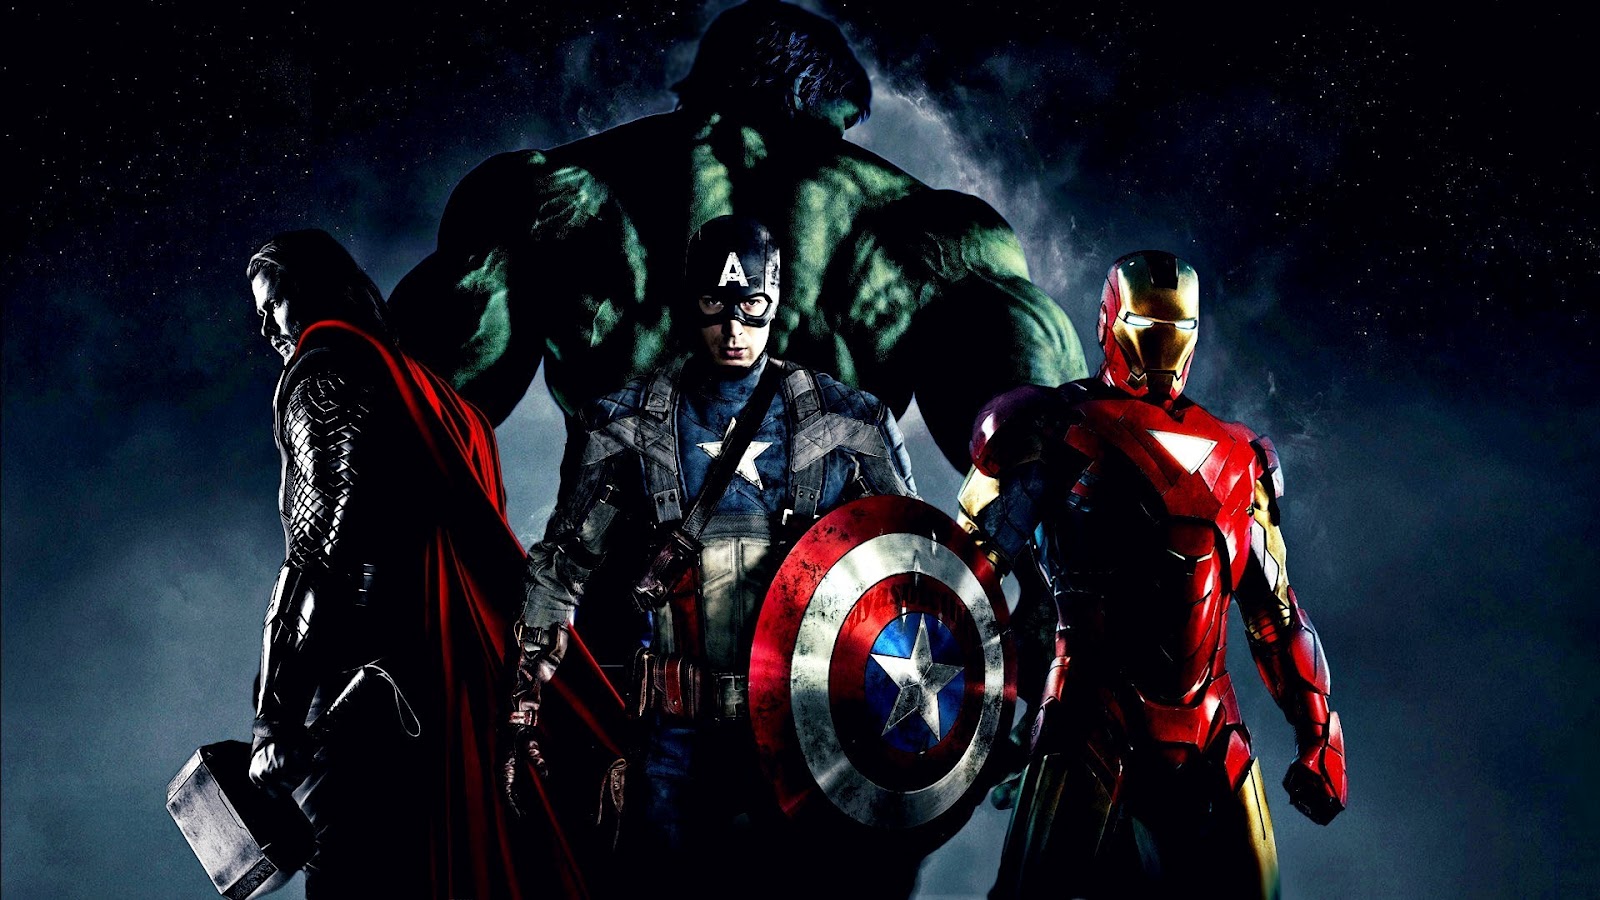 http://4.bp.blogspot.com/-Qni1XISf5XQ/T6hrrMJSlUI/AAAAAAAAEu8/p3rTiDtL0xQ/s1600/The_Avengers_2012_Thor_Captain_America_Hulk_and_Iron_Man_HD_Wallpaper-Vvallpaper.Net.jpg